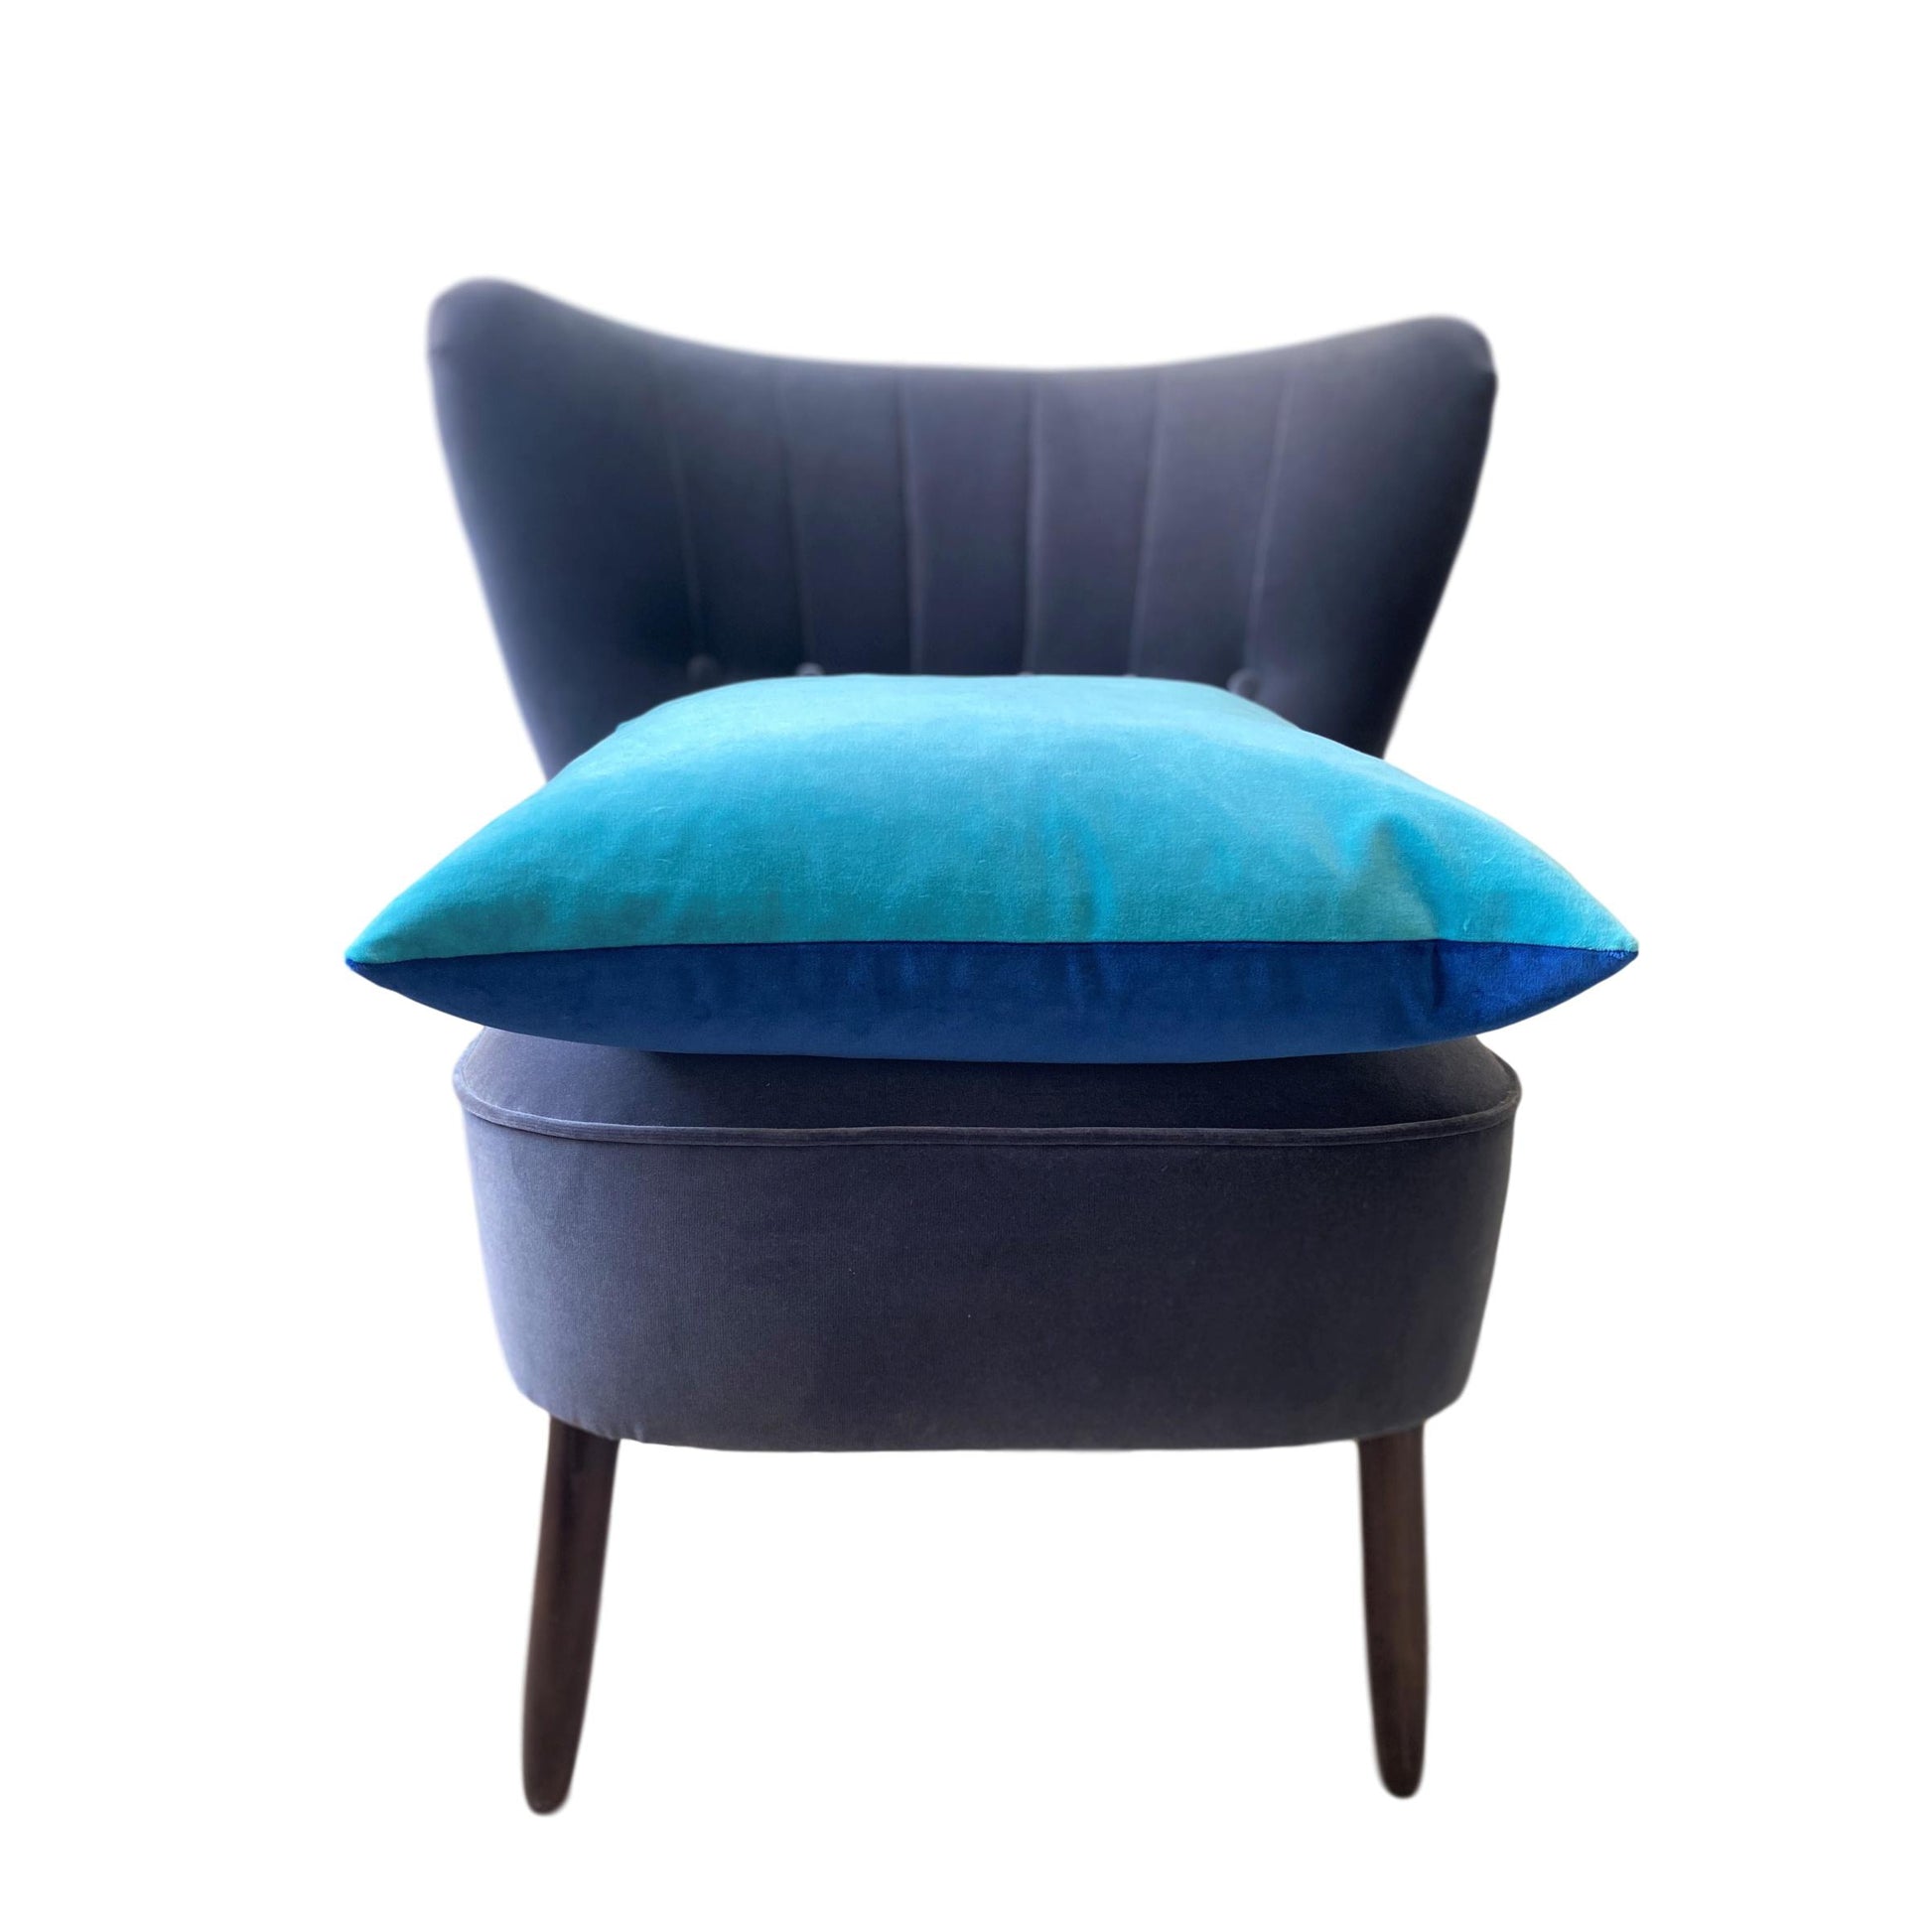 Cushions 50cm x 50cm in Turquoise velvet